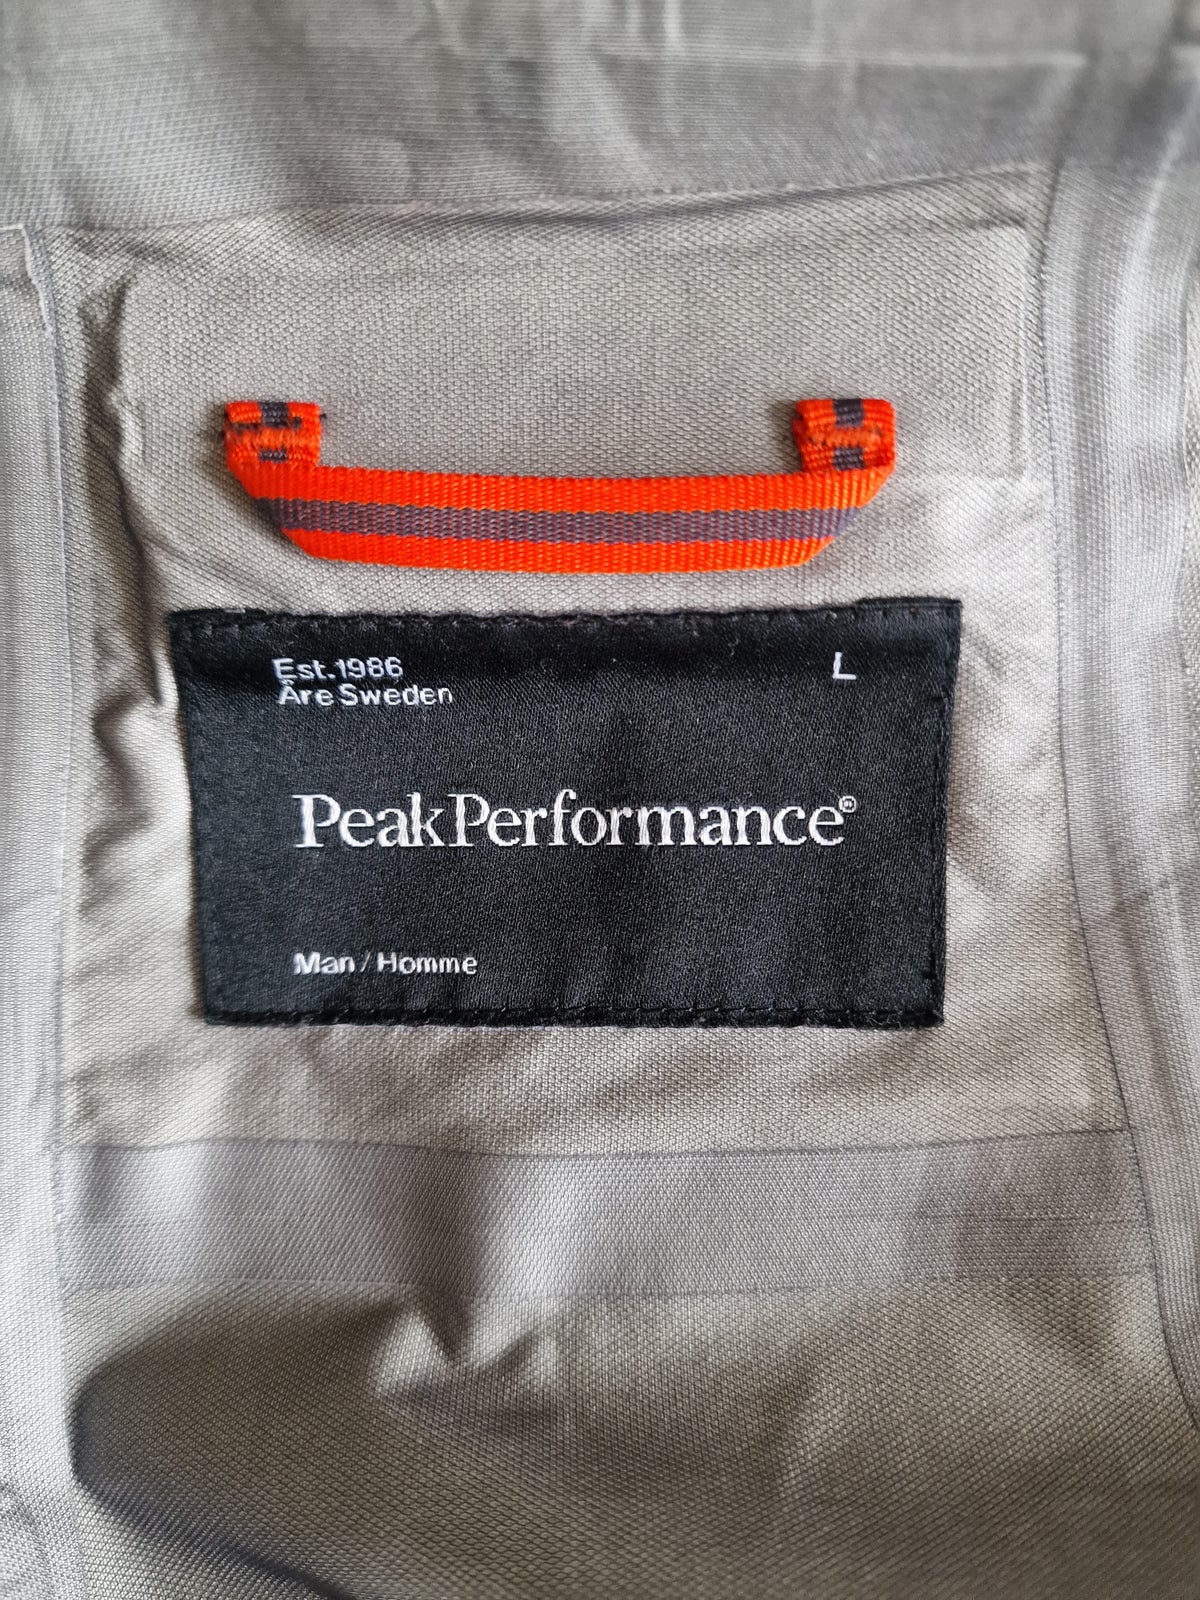 Skijakke, Peak Performance Heli Alpine Jacket, str. Large